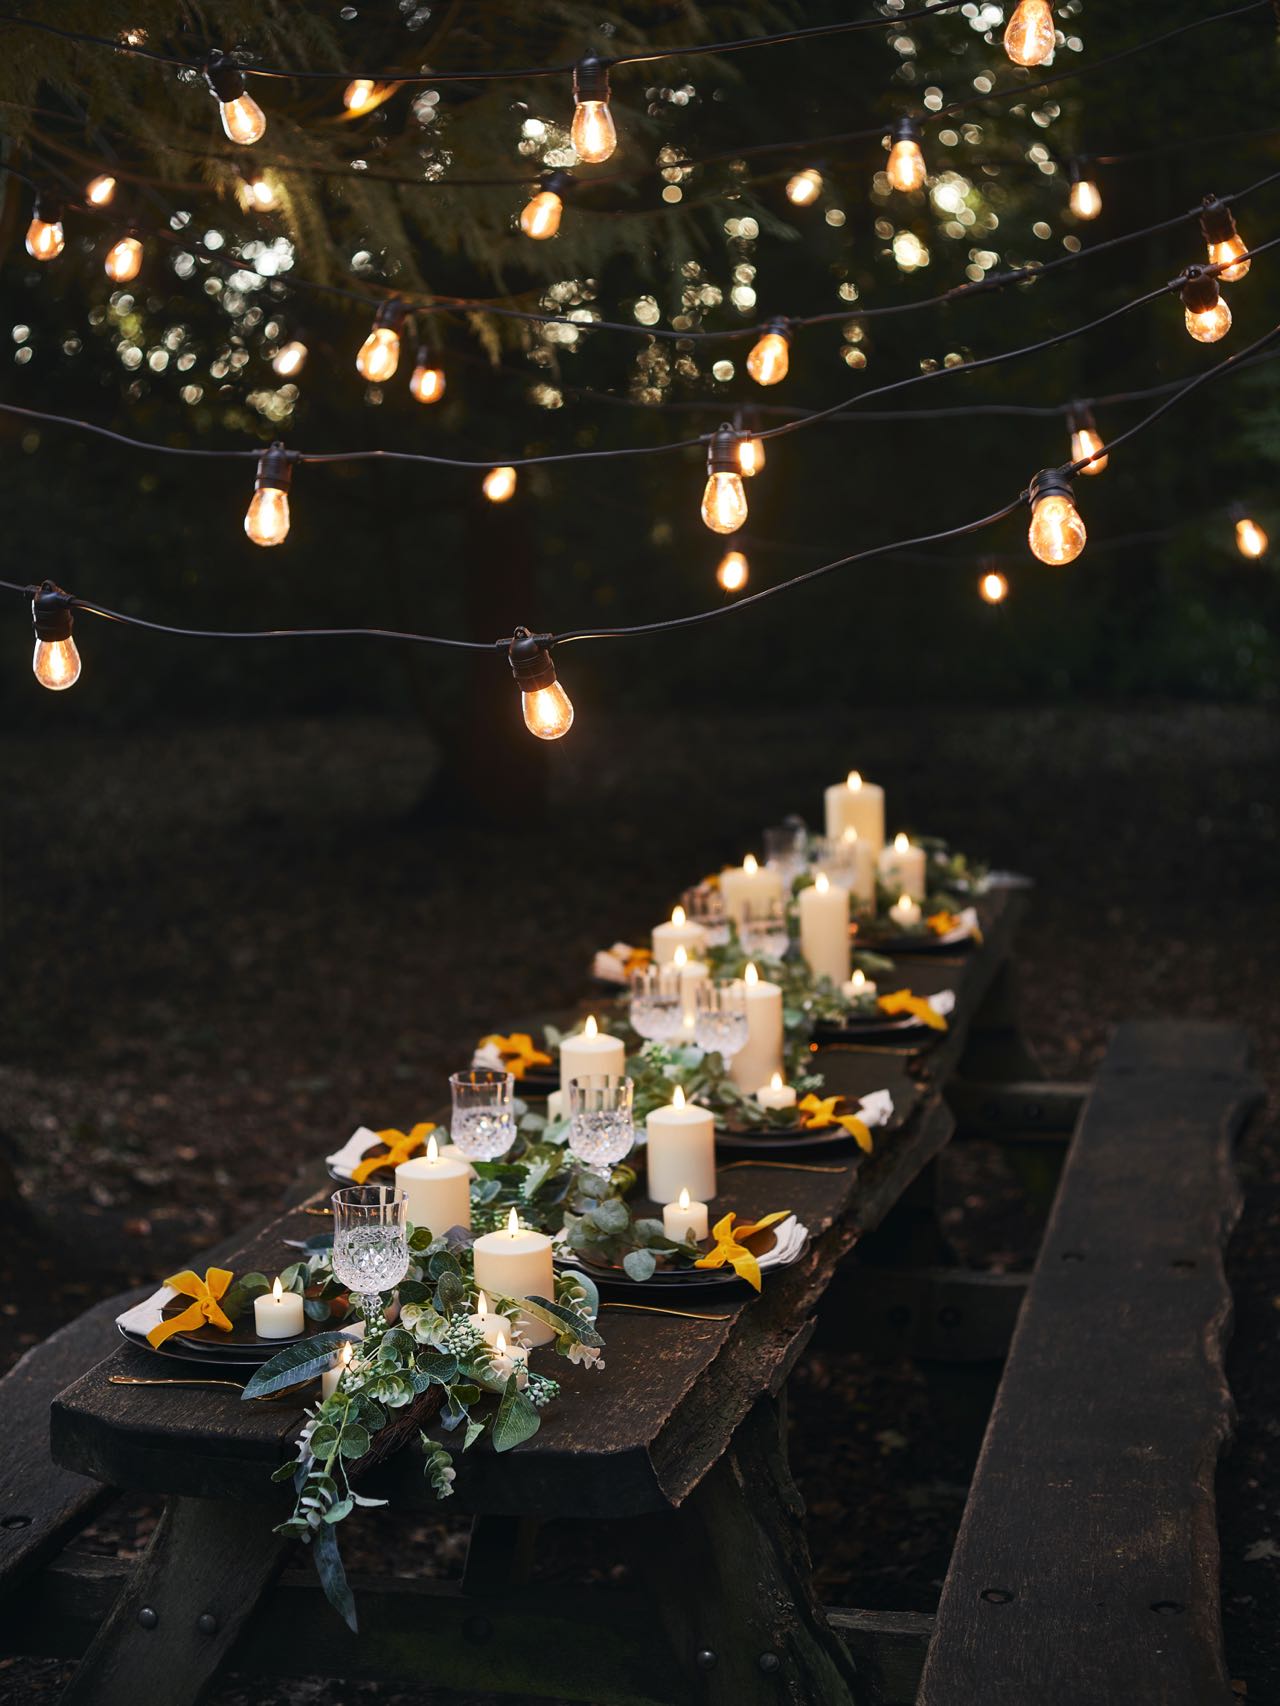 Bei einem Dinner an der frischen Luft kommt es auch auf den hübsch gedeckten Tisch an. Dekorative Teller, schöne Servietten oder frische Blumen und Kerzen schaffen die passende Optik. Ganz wichtig sind auch Lichterketten, die die nötige Portion Charme und Lässigkeit hineinbringen. Tolle Lichterketten gibt es von Lights4fun.